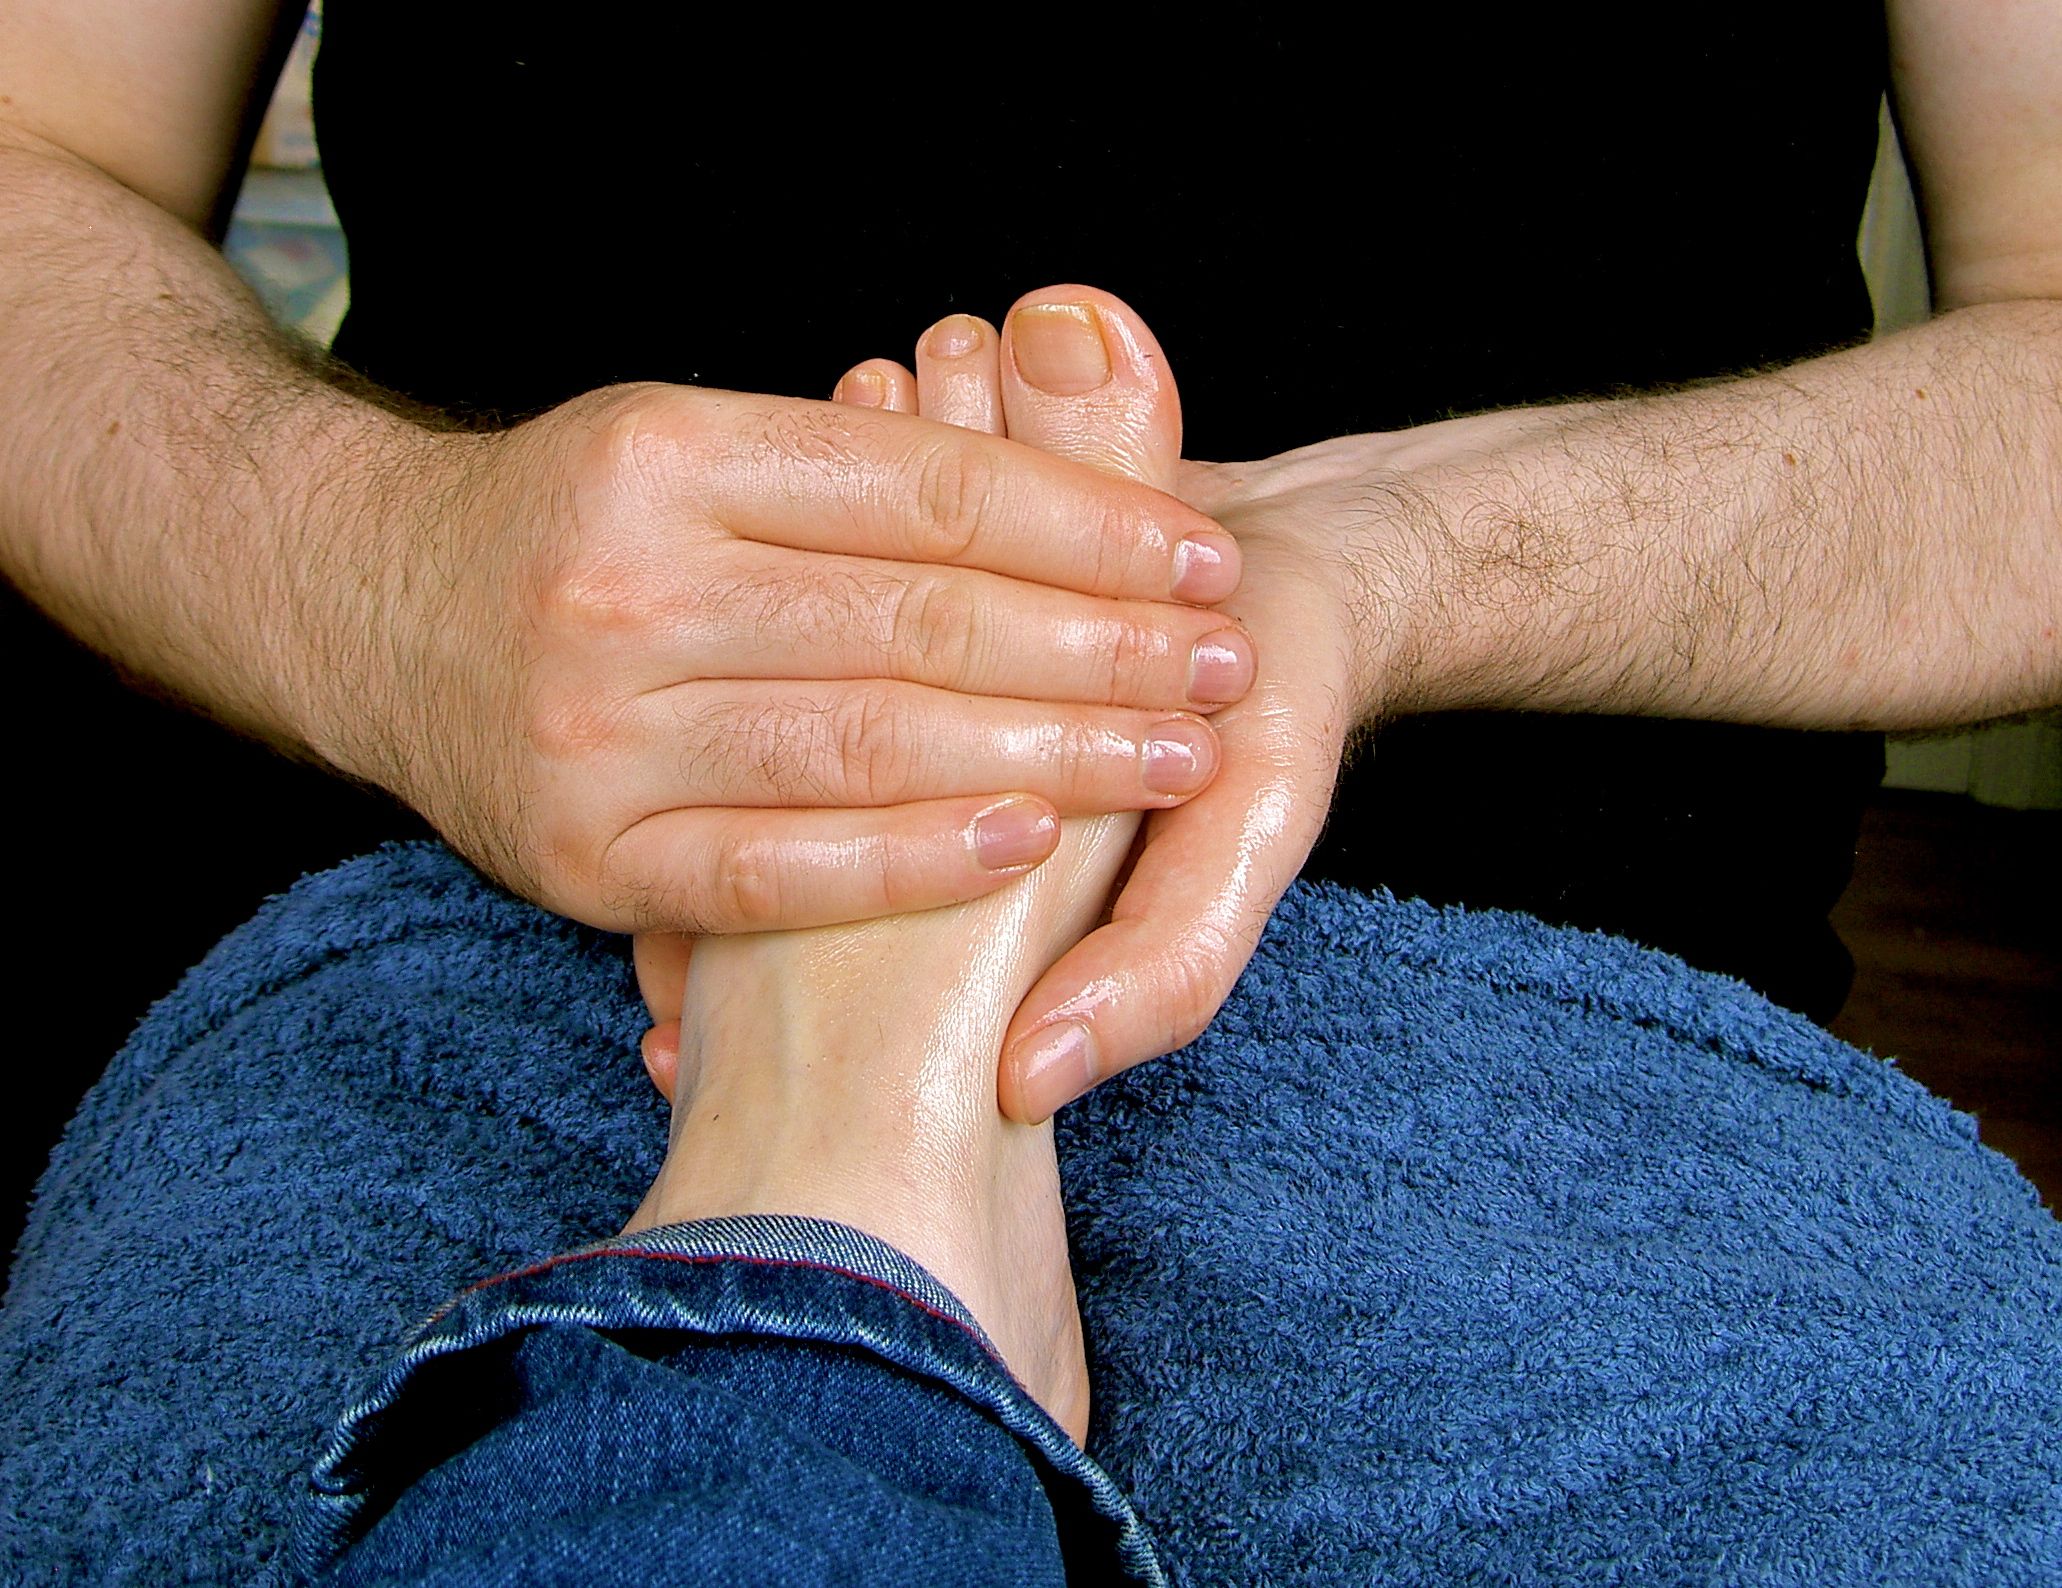 Massage-foot